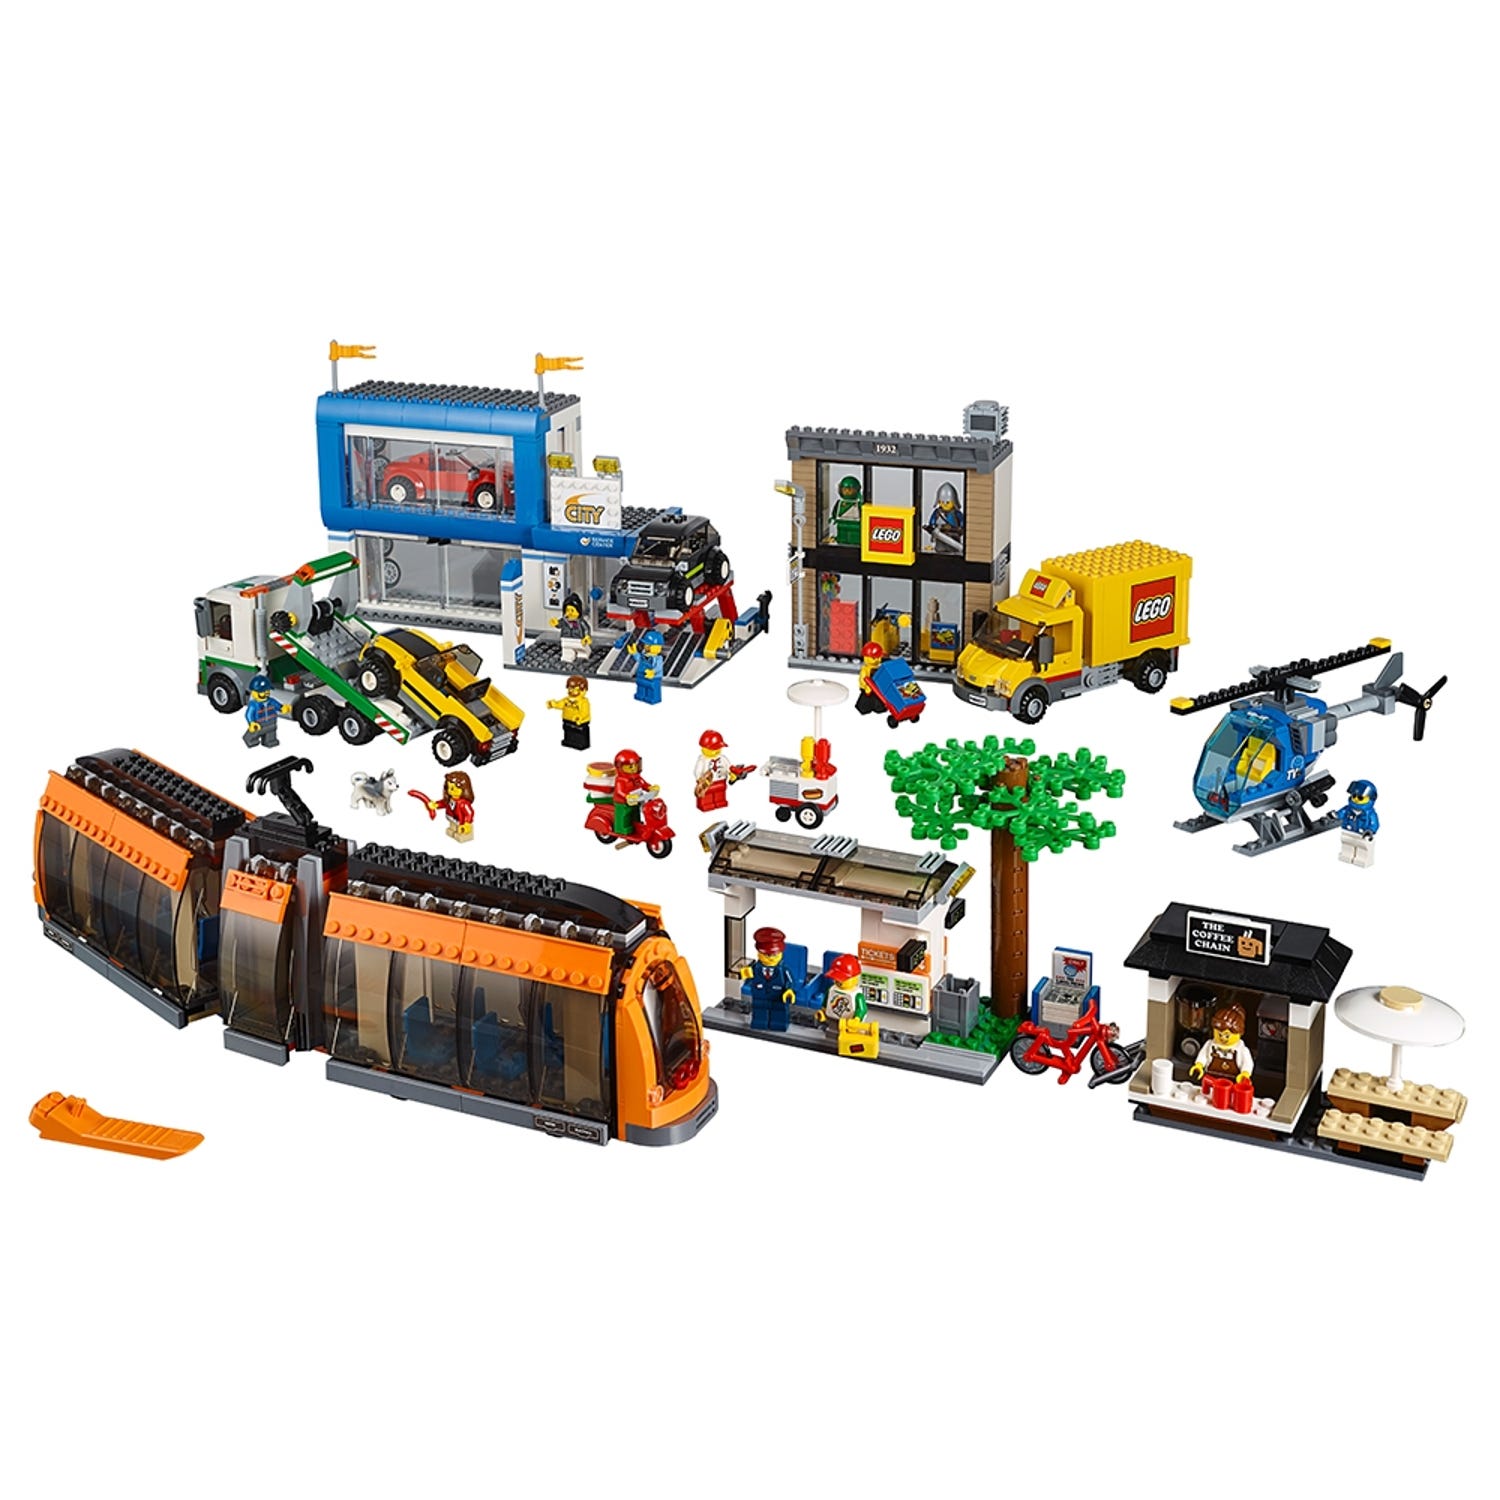 LEGO City: City Square (60097)